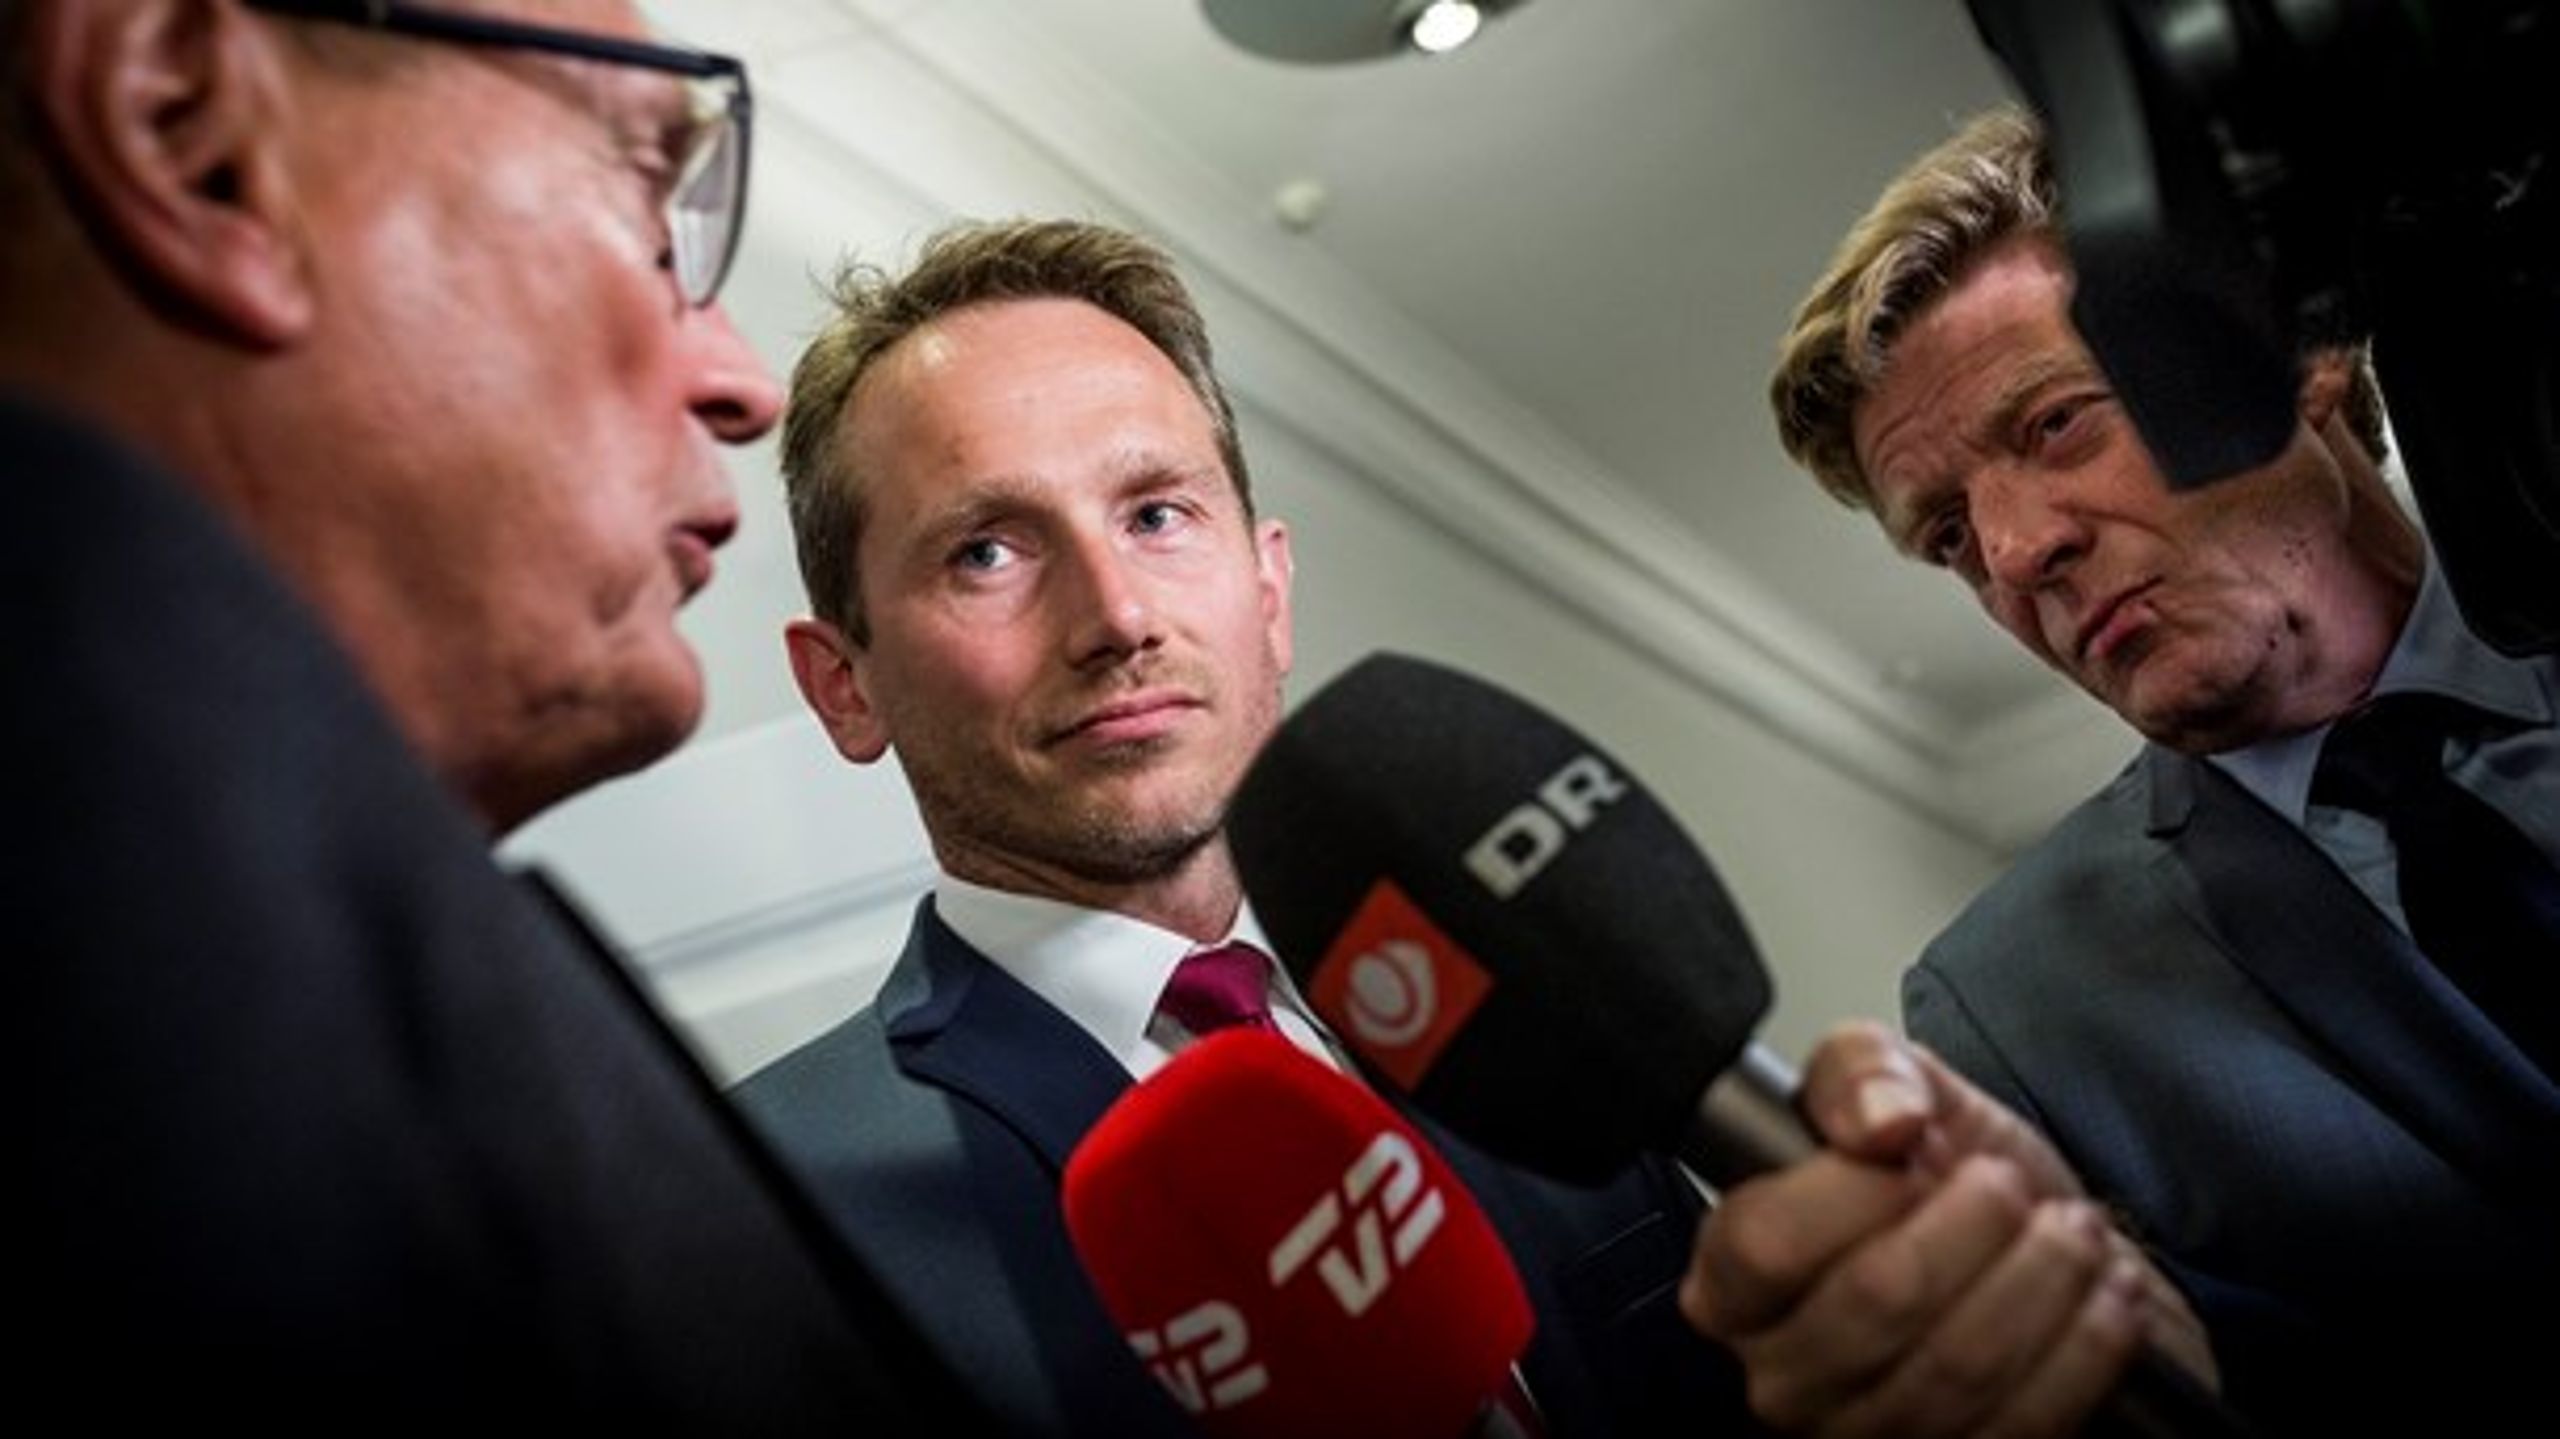 Finansminister Kristian Jensen (V) kan se frem til en travl dag, når han skal fremlægge regeringens skatteudspil.